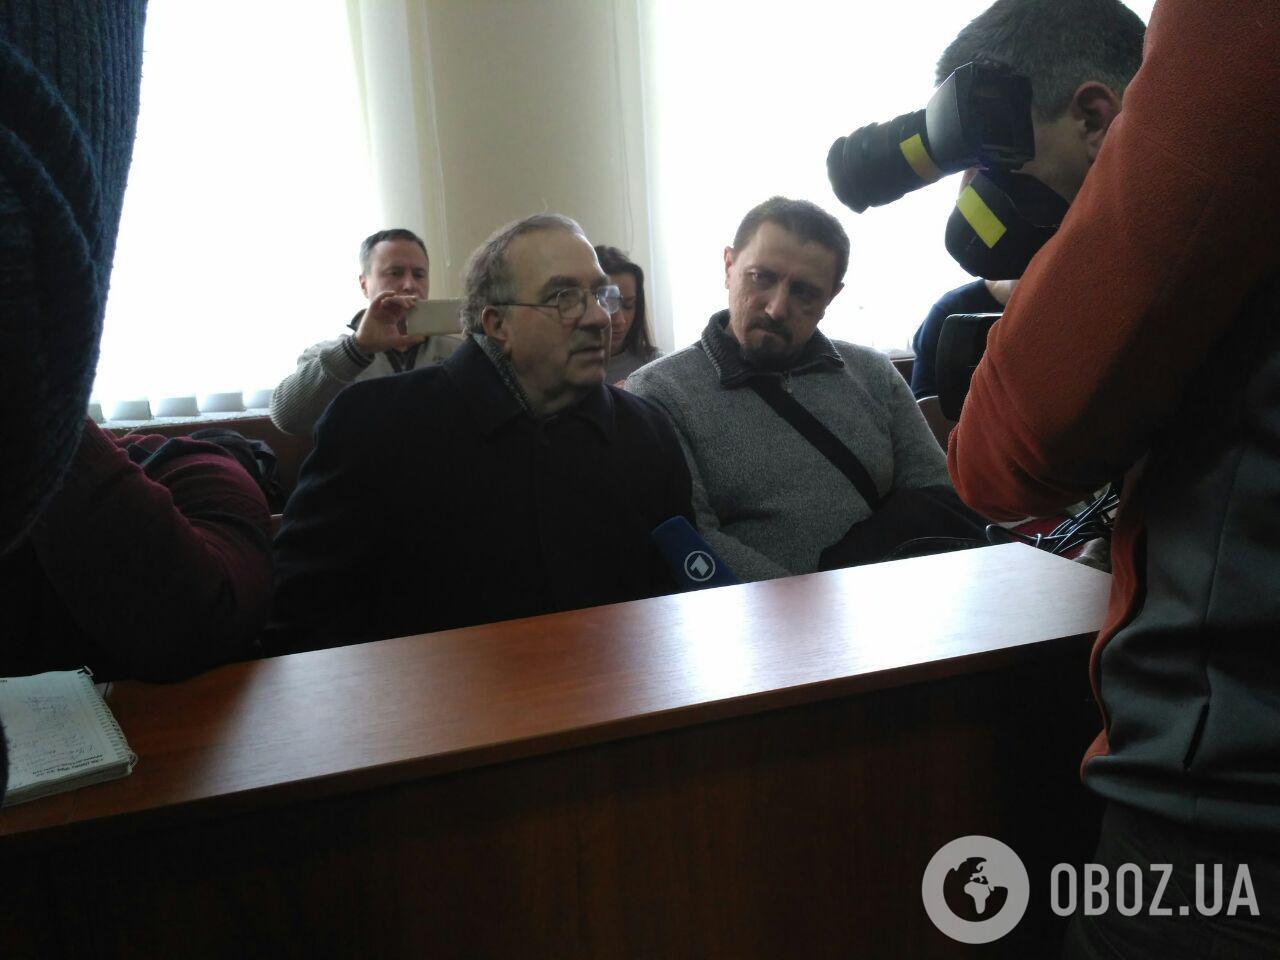 Отец Ноздровской заявил в суде, что его дочь убивали несколько человек